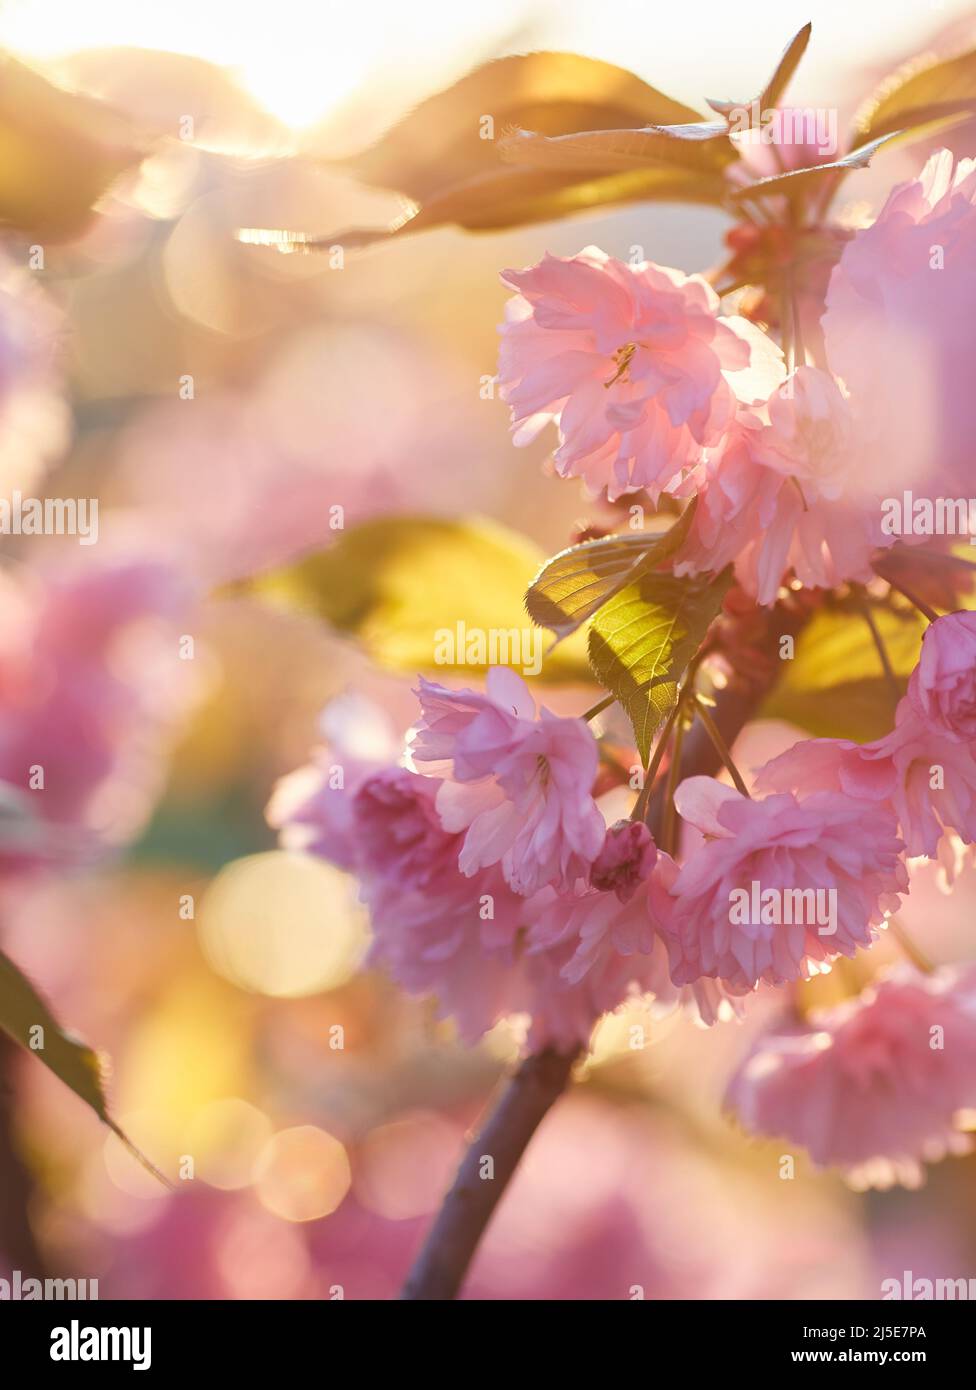 Hermosa flor de cerezo japonés con brotes de flores de color rosa intenso y flores jóvenes en auge. Fondo bokeh. Profundidad de campo baja para una sensación de ensueño. Foto de stock